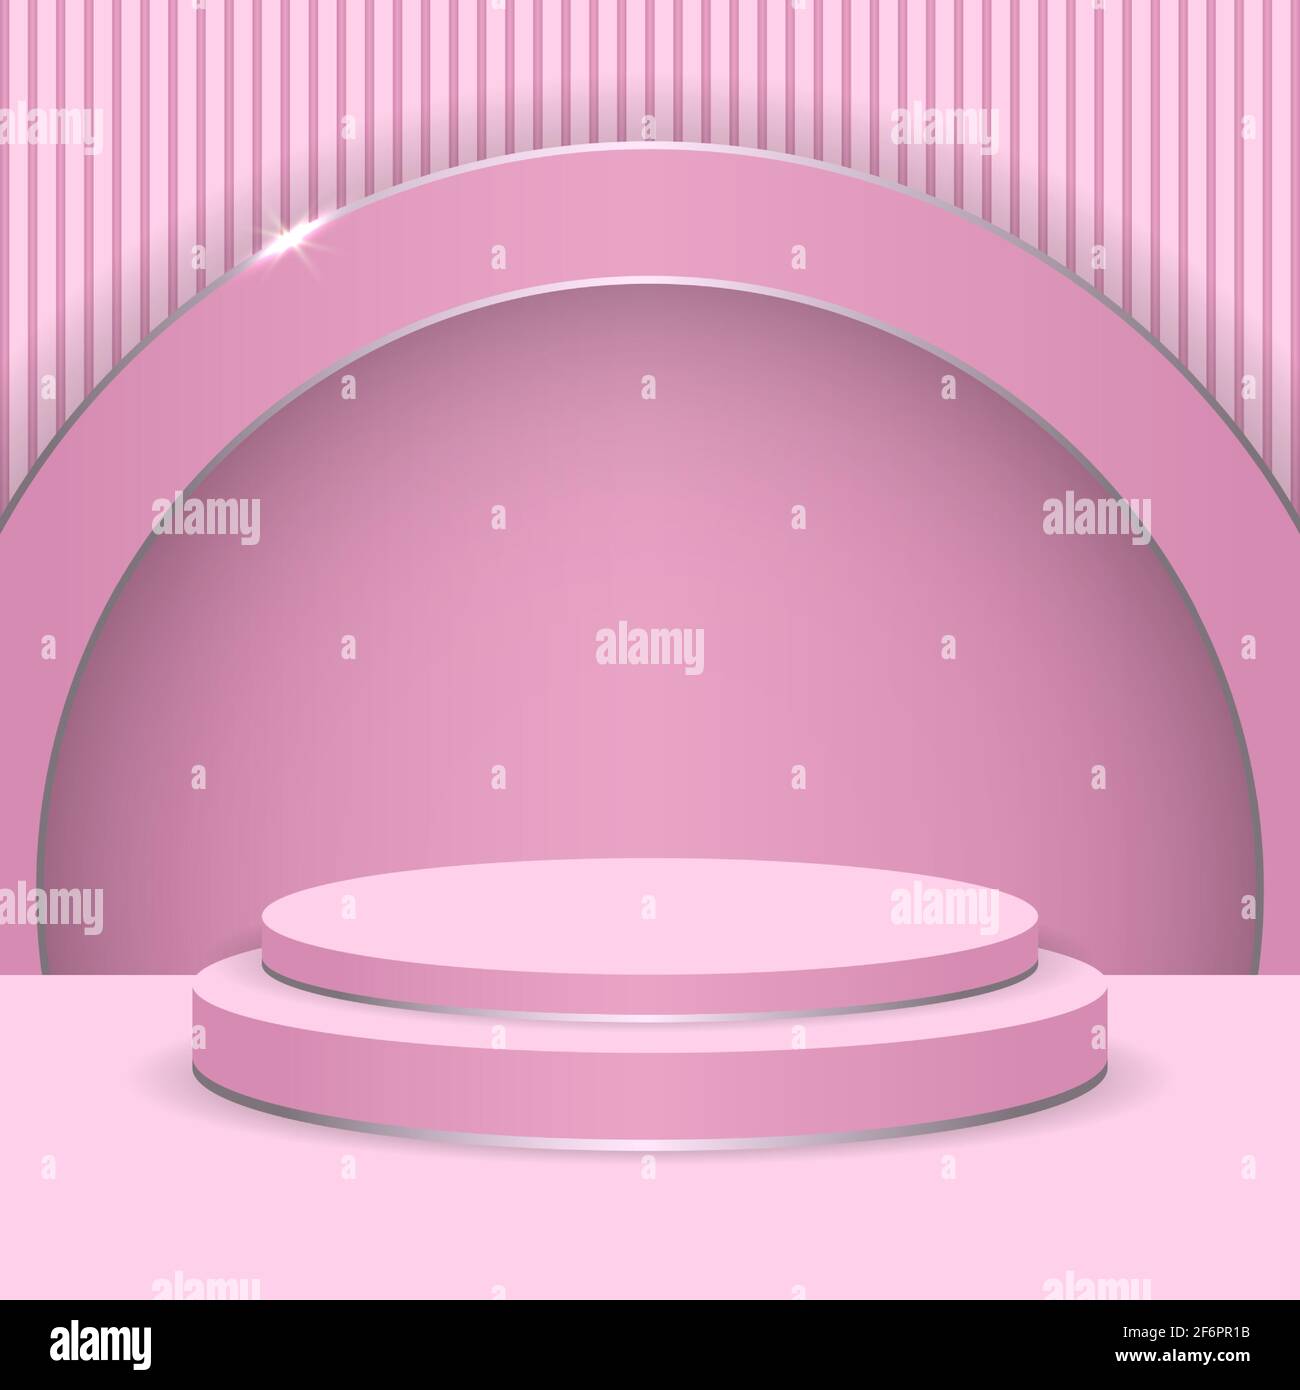 Scena astratta con display rotondo per il prodotto. podio 3d su sfondo rosa con cerchi rosa e argento. Piedistallo o piattaforma di lusso per palcoscenico astratto. Illustrazione Vettoriale